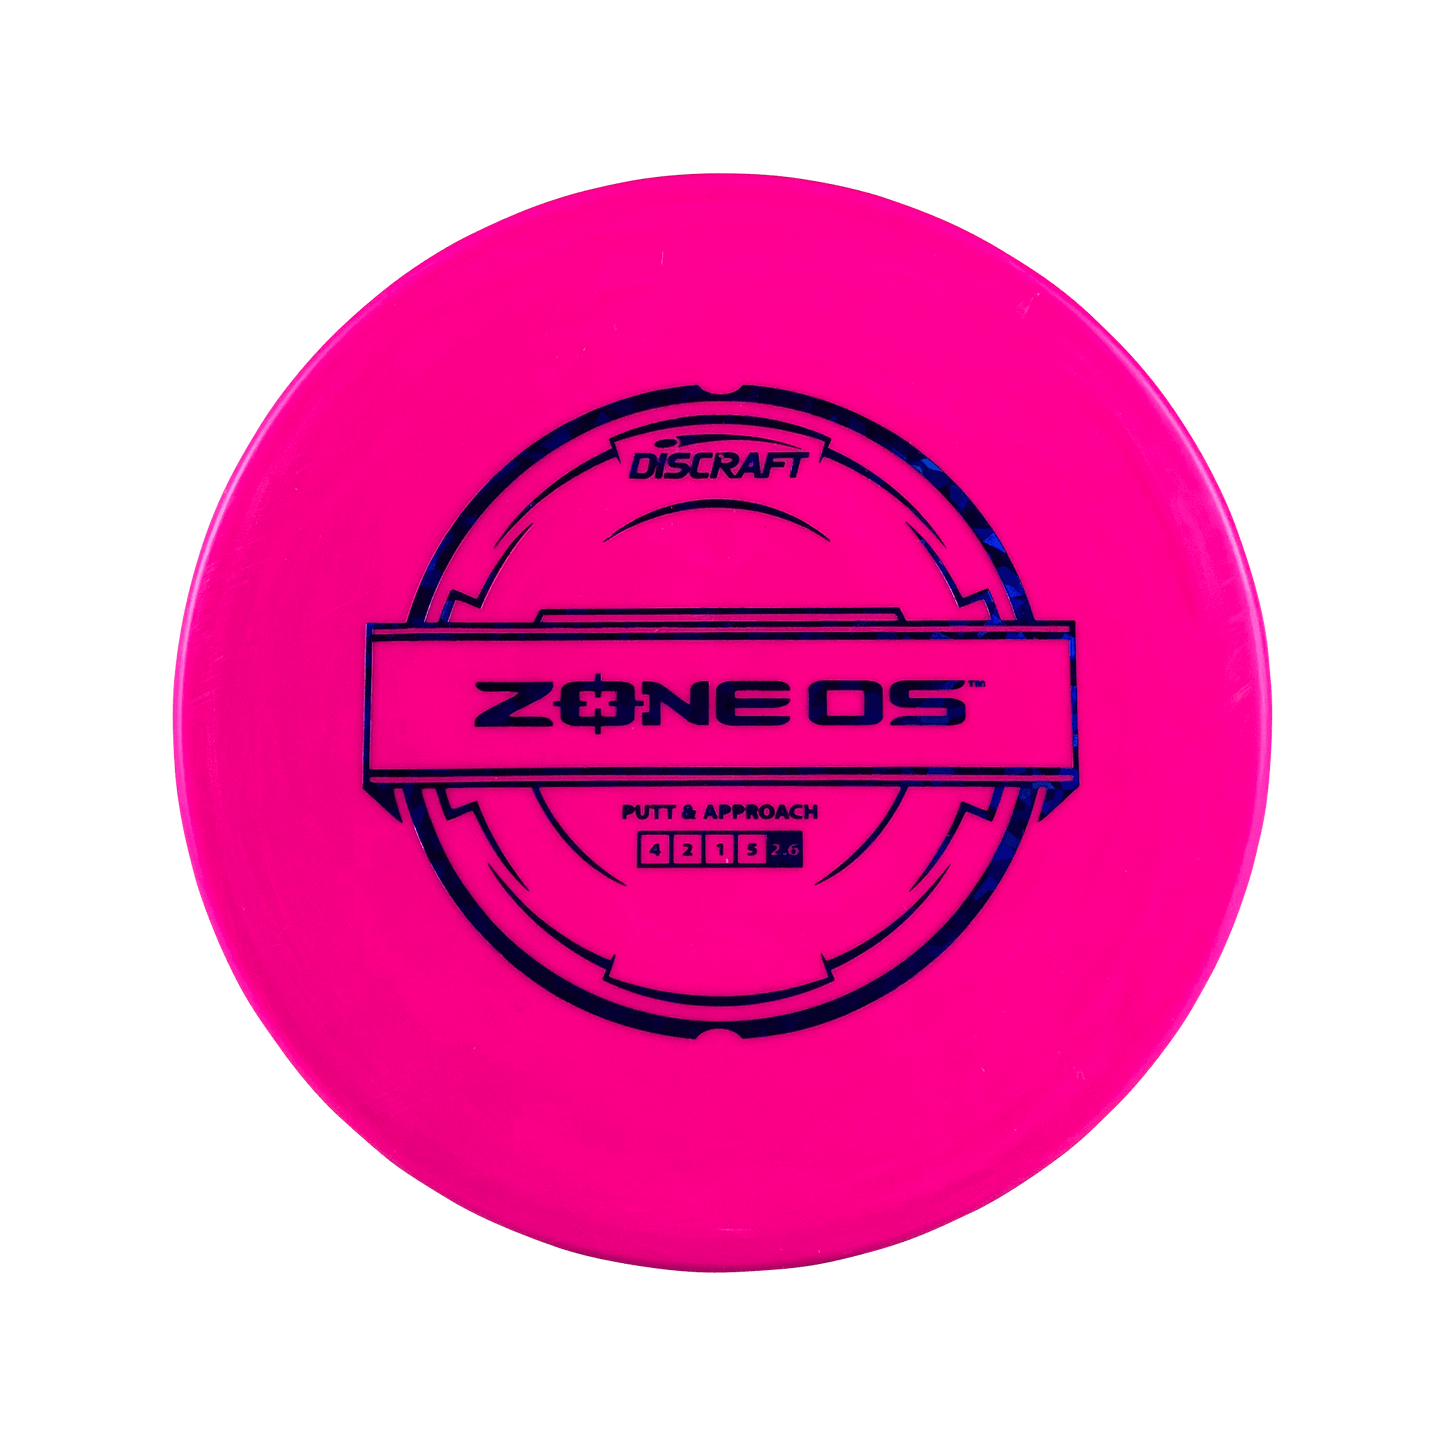 Putter Blend Zone OS Disc Discraft pink 173 